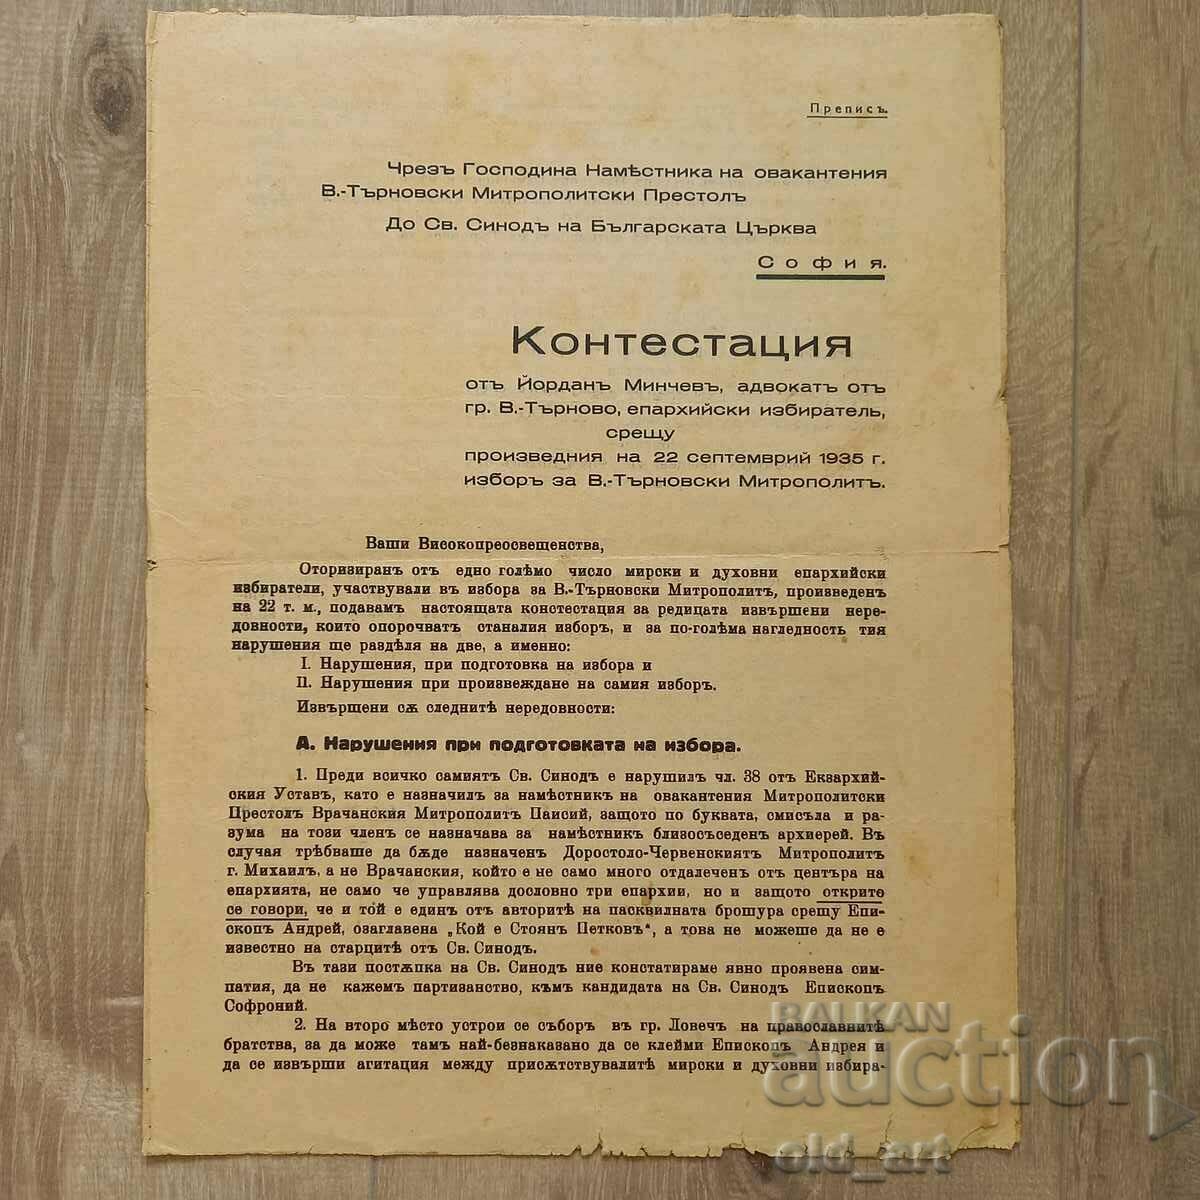 Αμφισβήτηση σχετικά με την εκλογή του Μητροπολίτη V. Tarnovsky, 1935